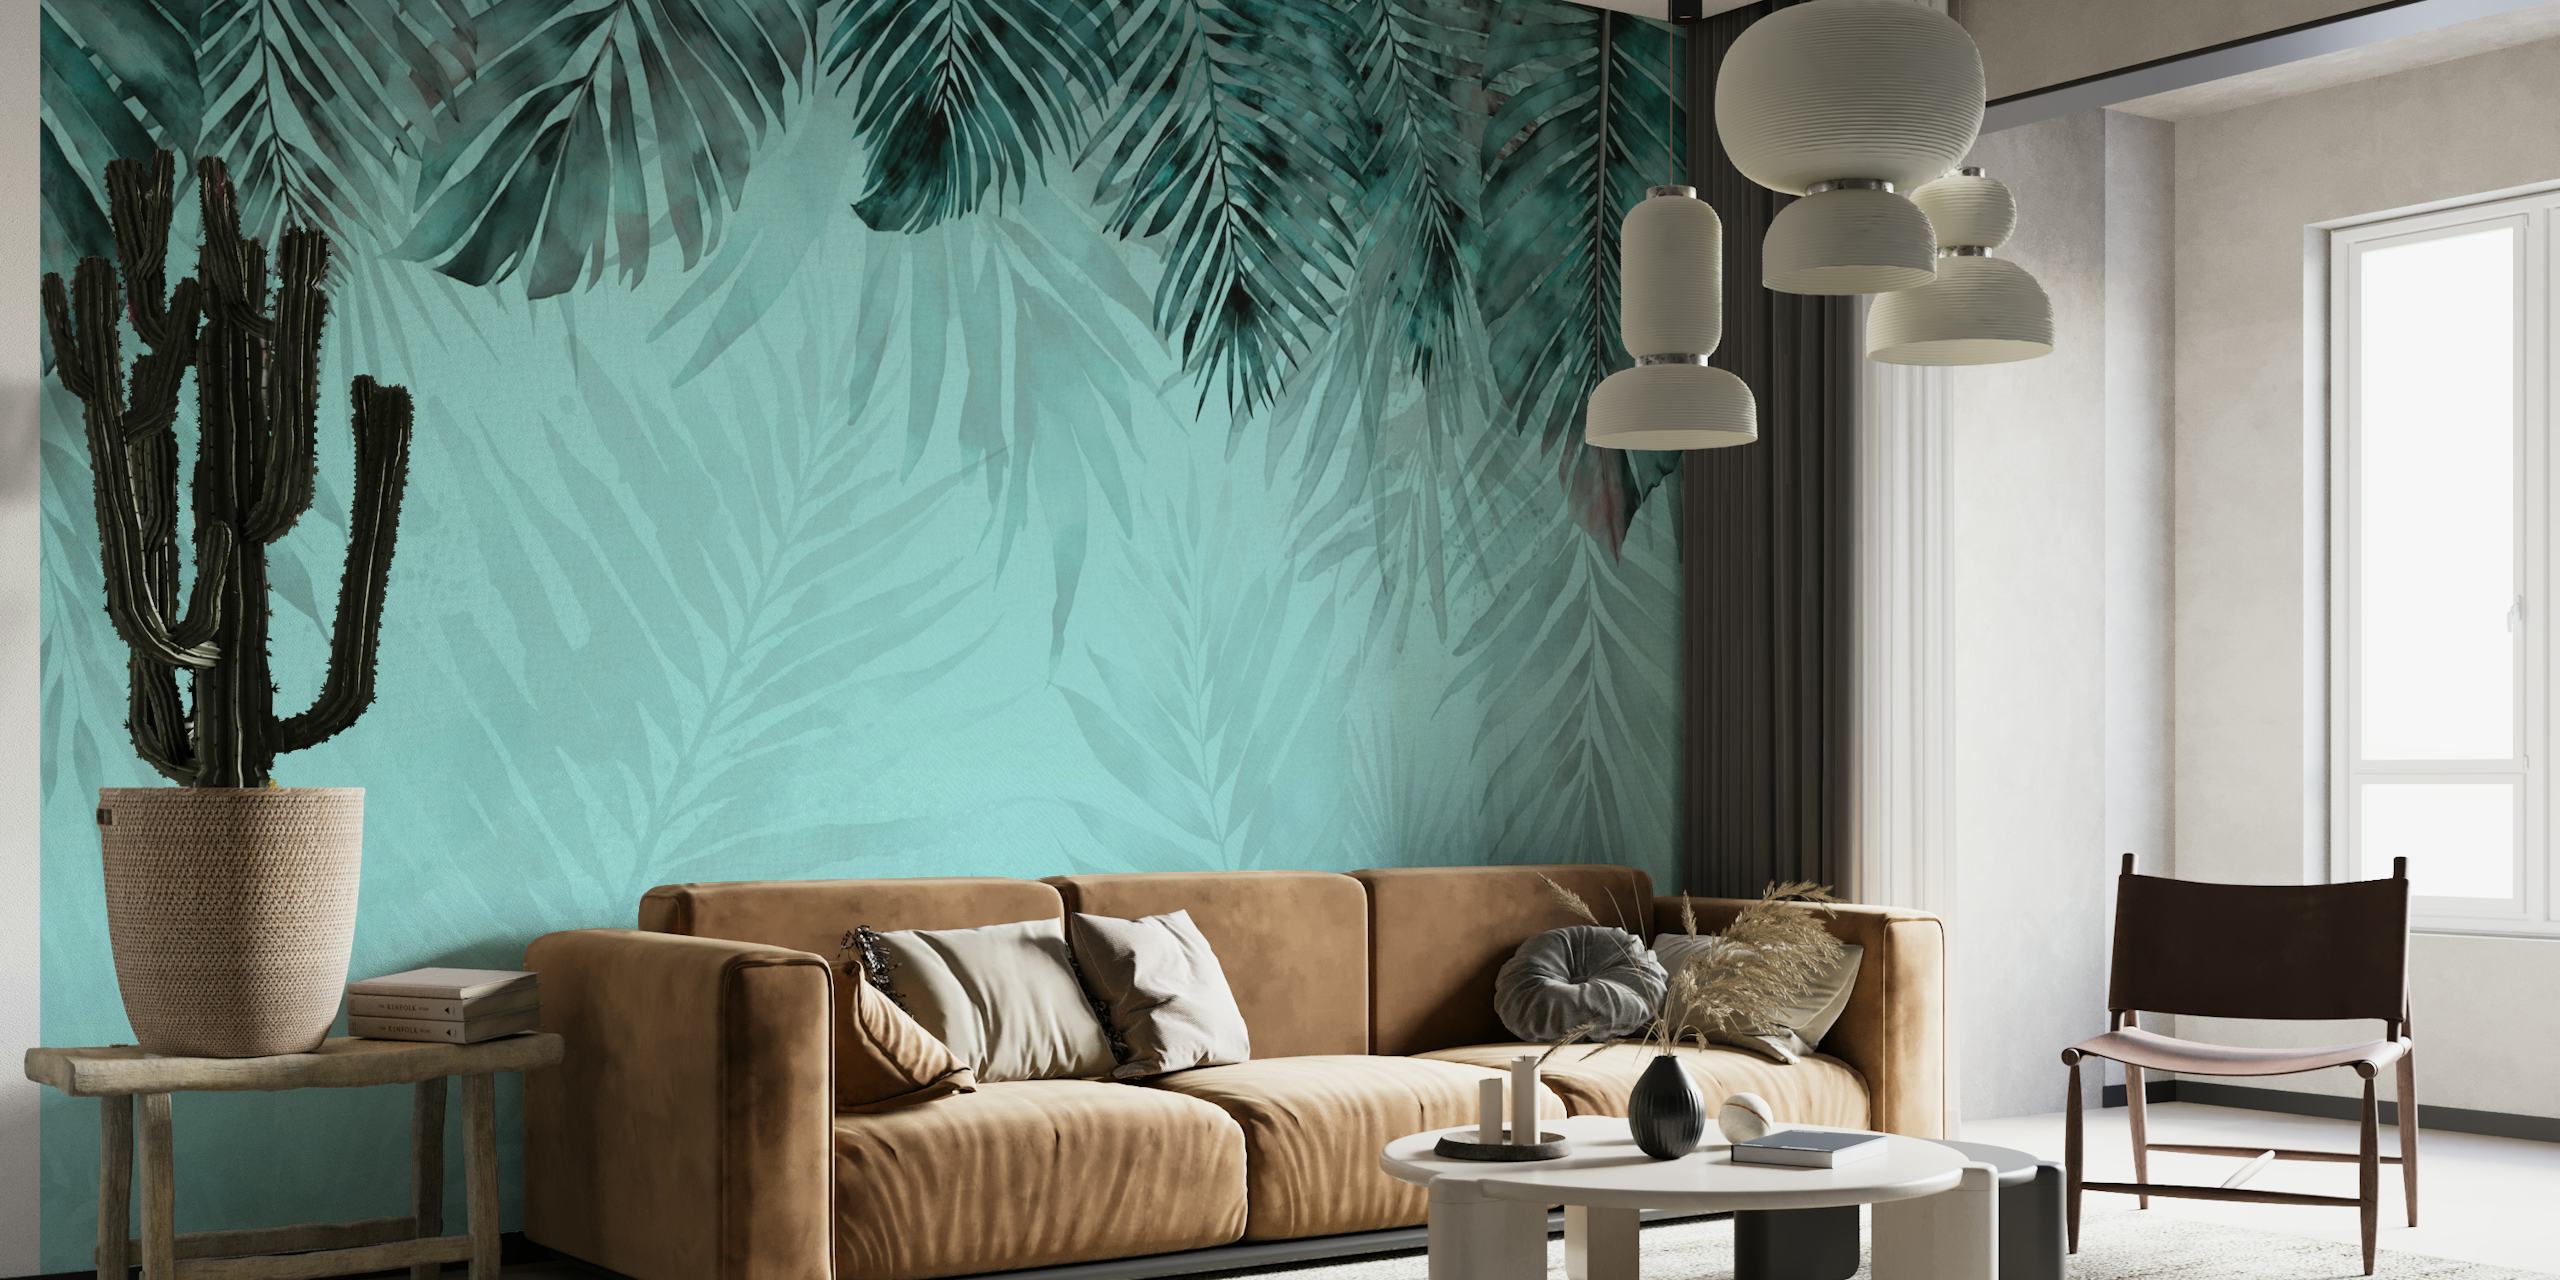 Mural de parede com tema de selva turquesa e azul-petróleo com padrões de folhagem tropical